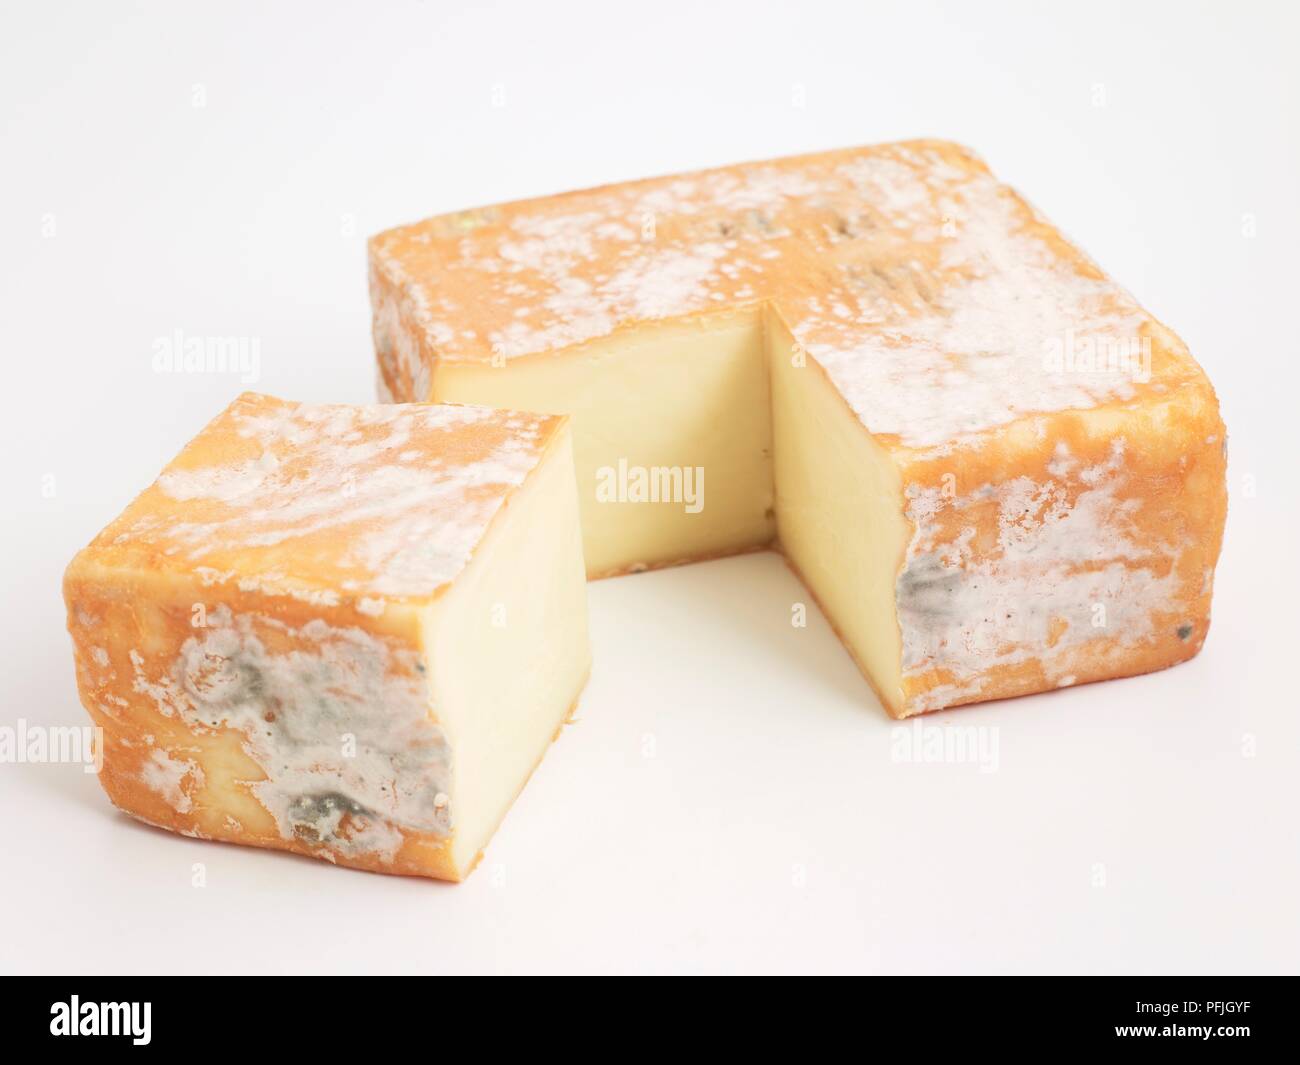 Tranches de carré de Robiola italien della Valsassina fromage au lait de vache montrant la moisissure sur la couenne Banque D'Images